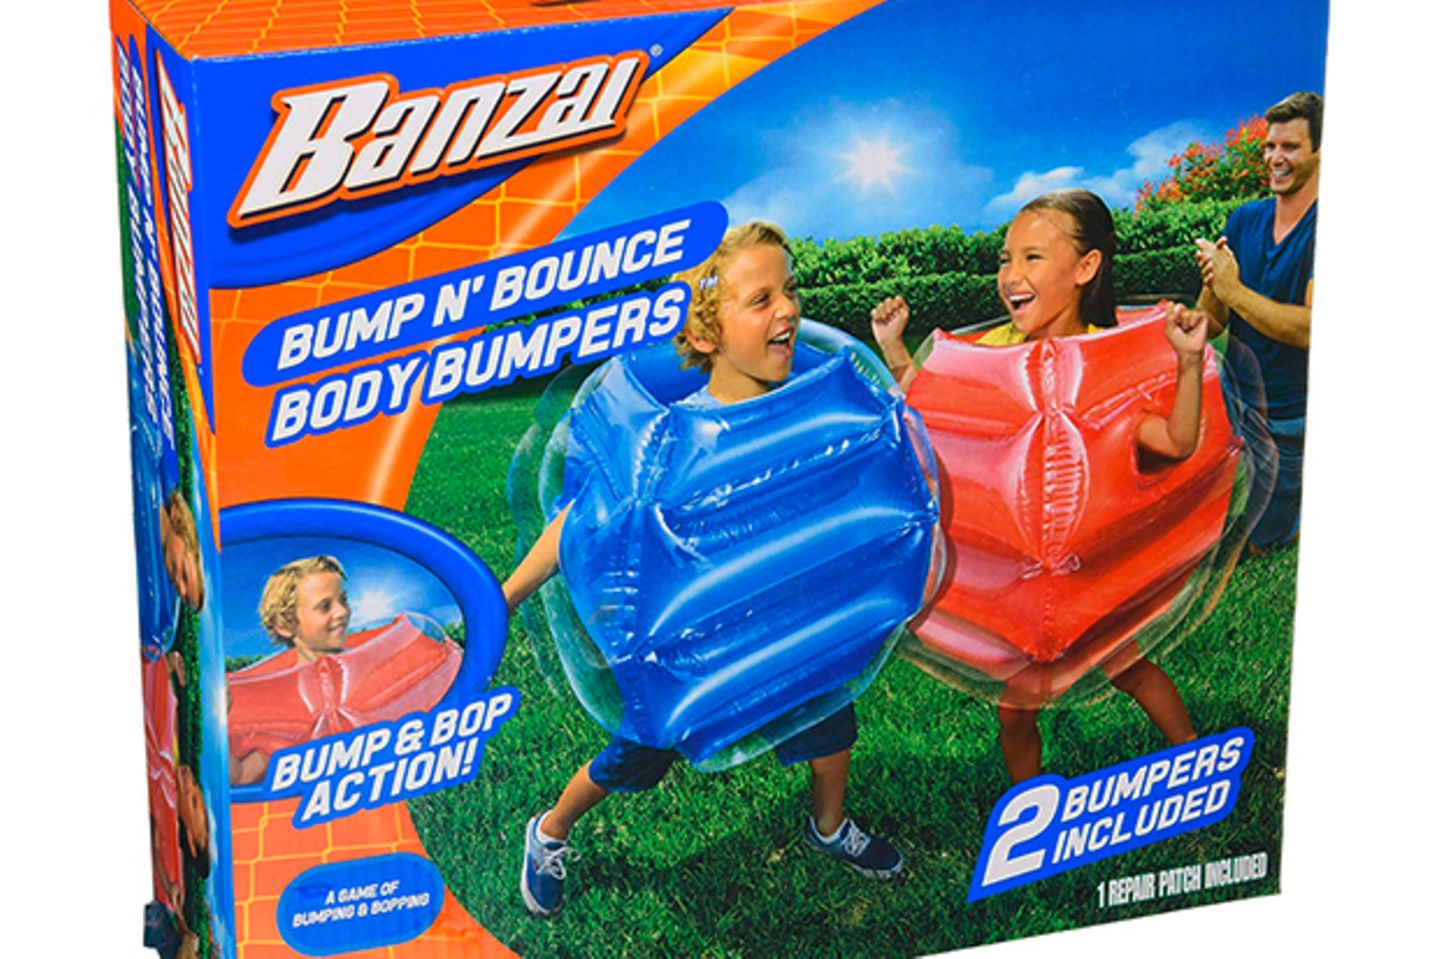 Wer genügend Platz in der Wohnung hat, kann seinen Kids diese coole Bodybumper kaufen. Einfach aufblasen und losbumpen. Ein riesiger Spaßfaktor und die Kids toben sich aus. 